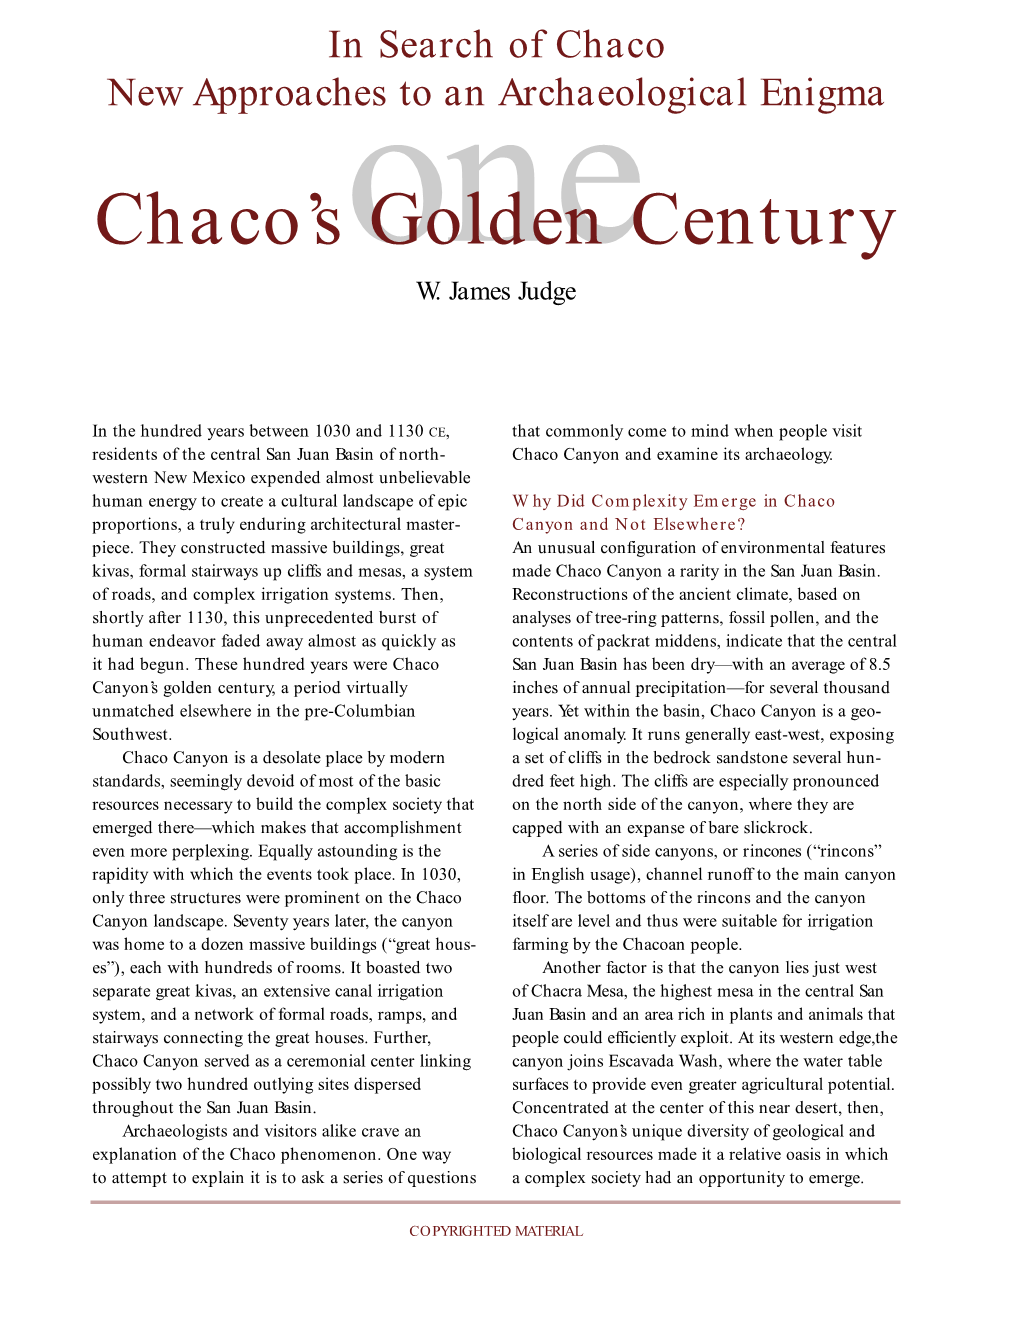 Chaco's Golden Century